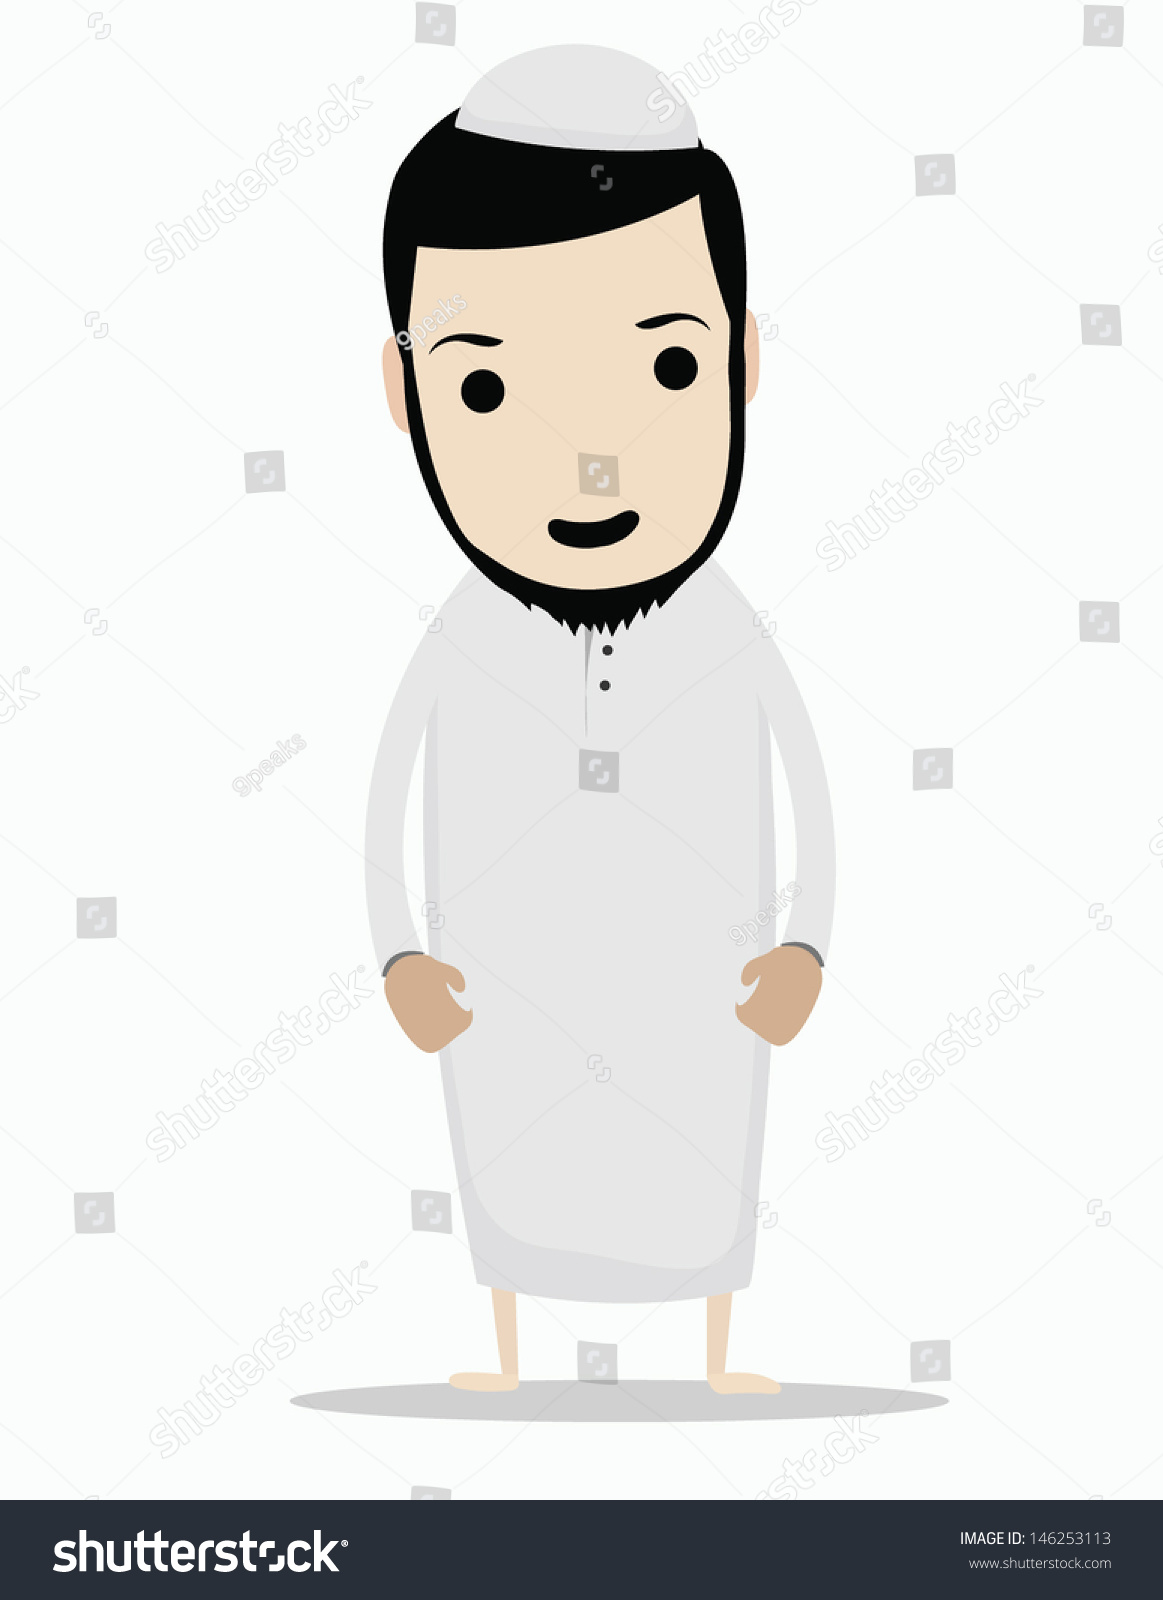 stock-vector-muslim-man-cartoon-146253113.jpg